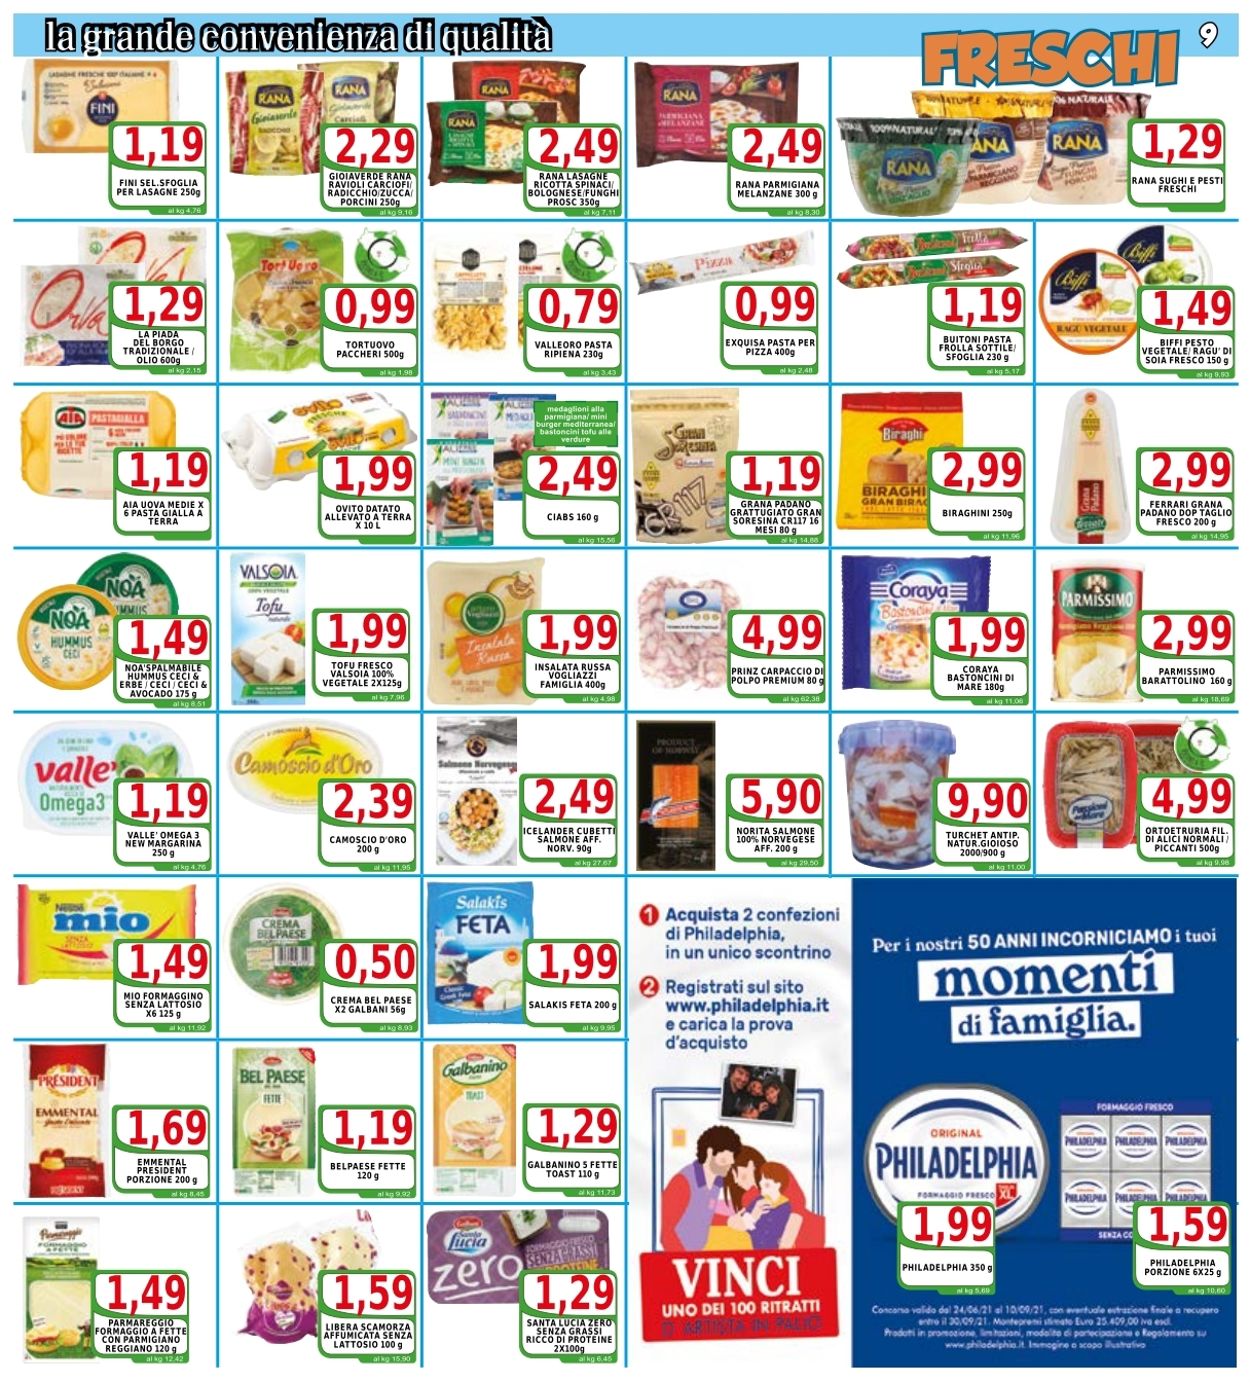 Top Supermercati Volantino dal 20/08/2021